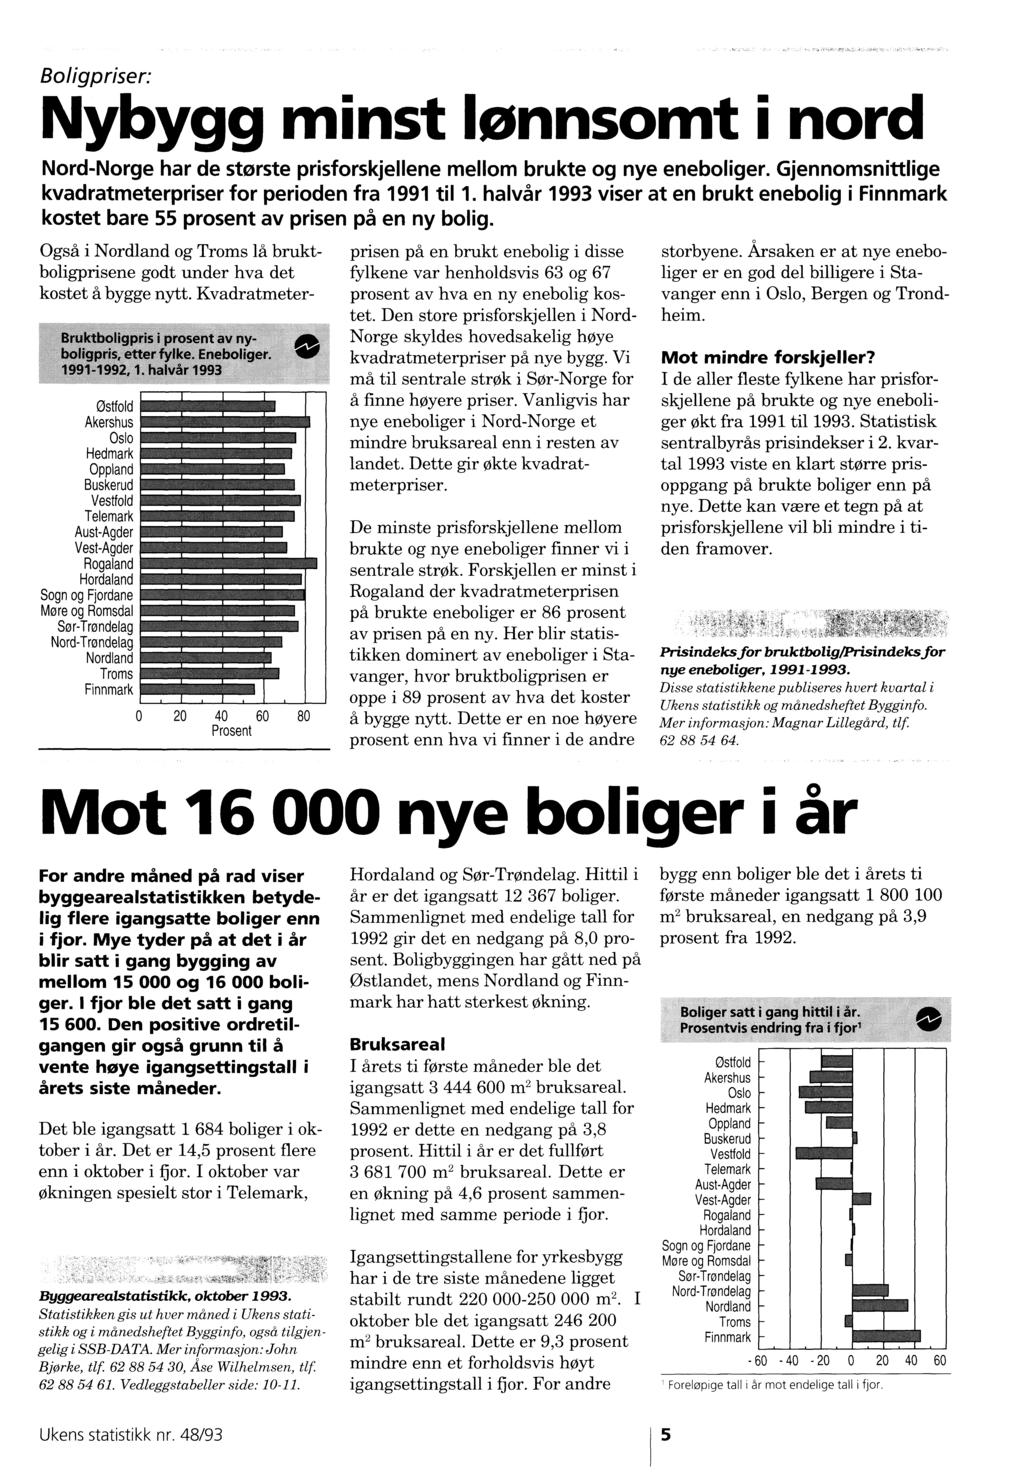 uougpriser: Nybygg minst lønnsomt i nord Nord-Norge har de største prisforskjellene mellom brukte og nye eneboliger. Gjennomsnittlige kvadratmeterpriser for perioden fra 99 til.